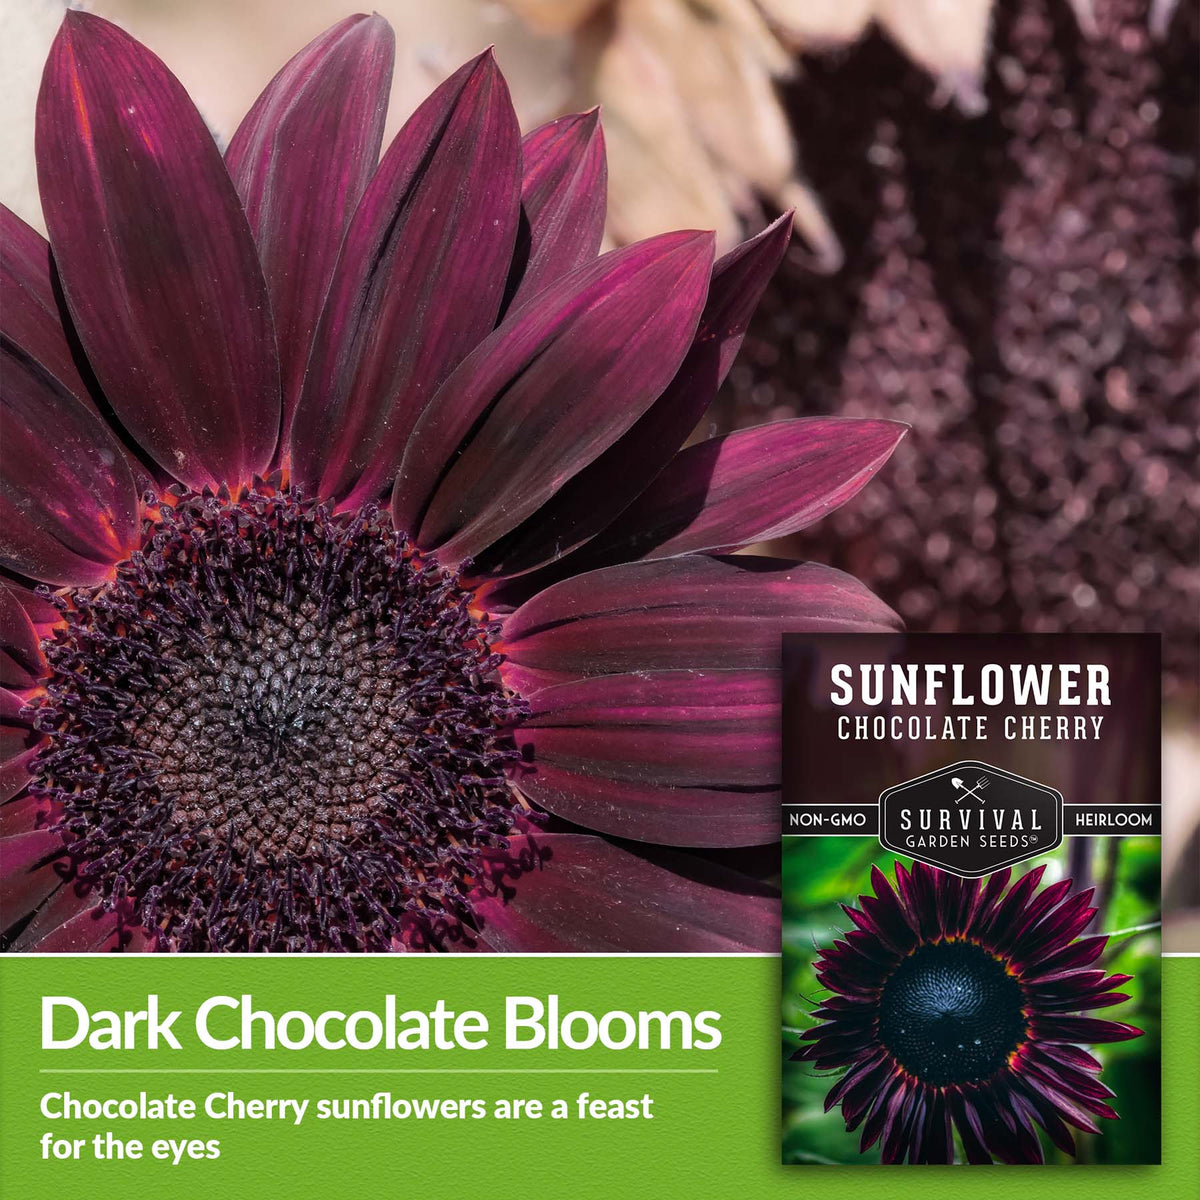 Chocolate Cherry Sunflowers have dark chocolate blooms